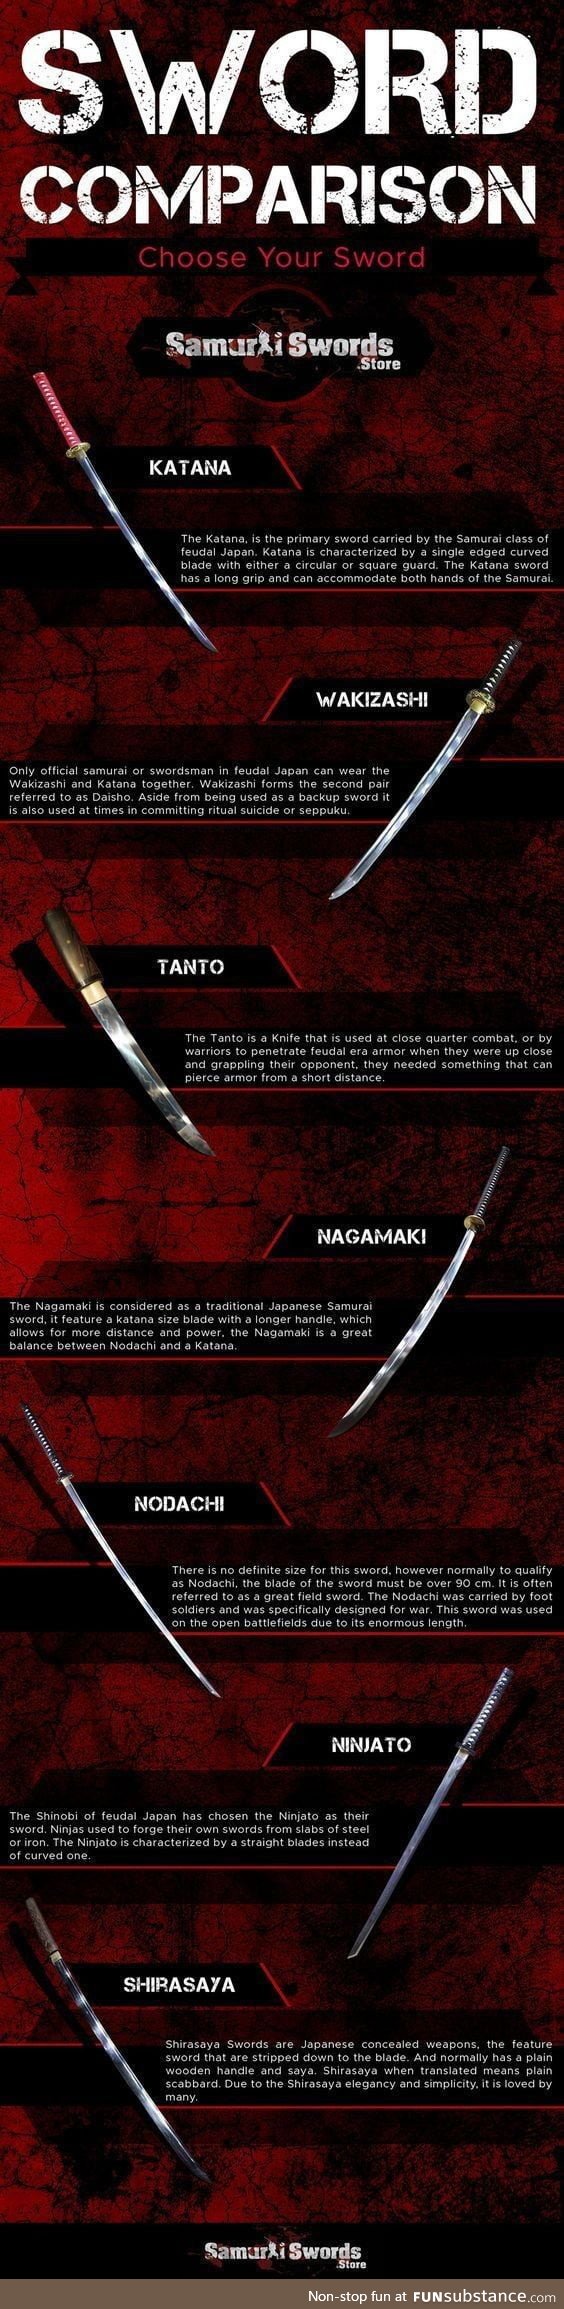 Sword comparison